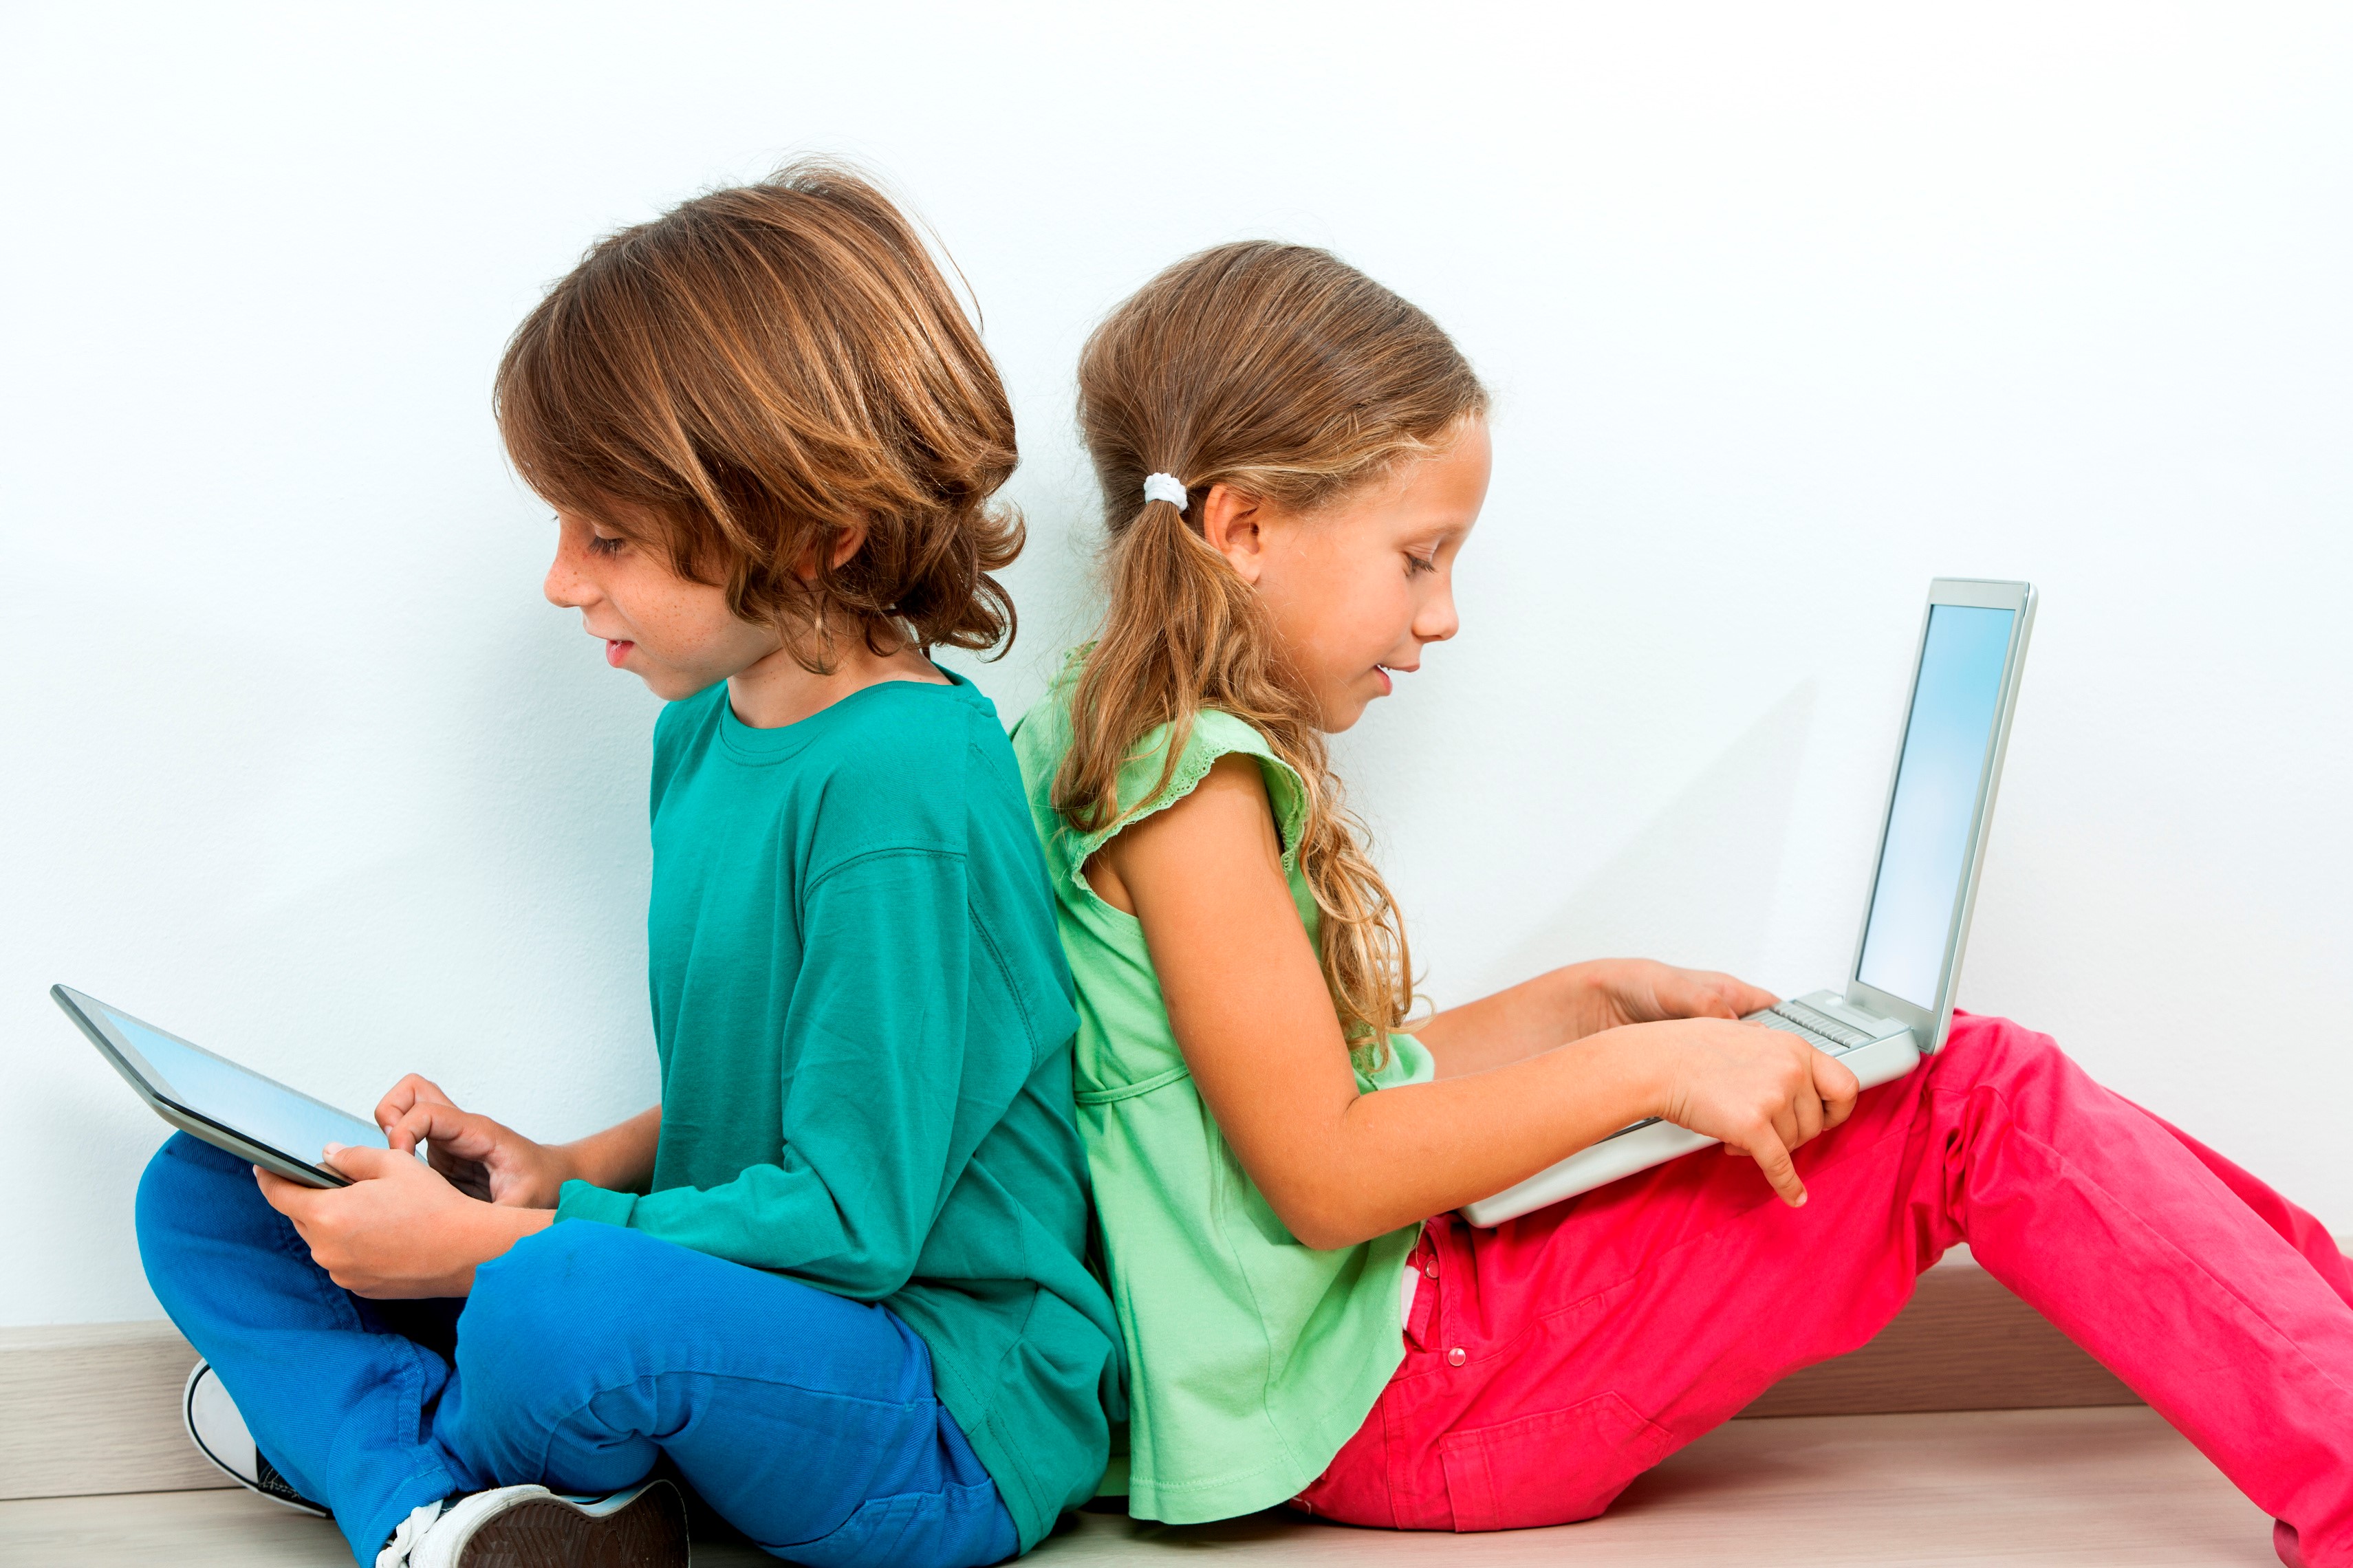 Zwei Kinder sitzen, Rücken an Rücken, auf dem Boden. Das Mädchen hat einen Laptop am Schoß und der Junge hält ein Tablet in der Hand.